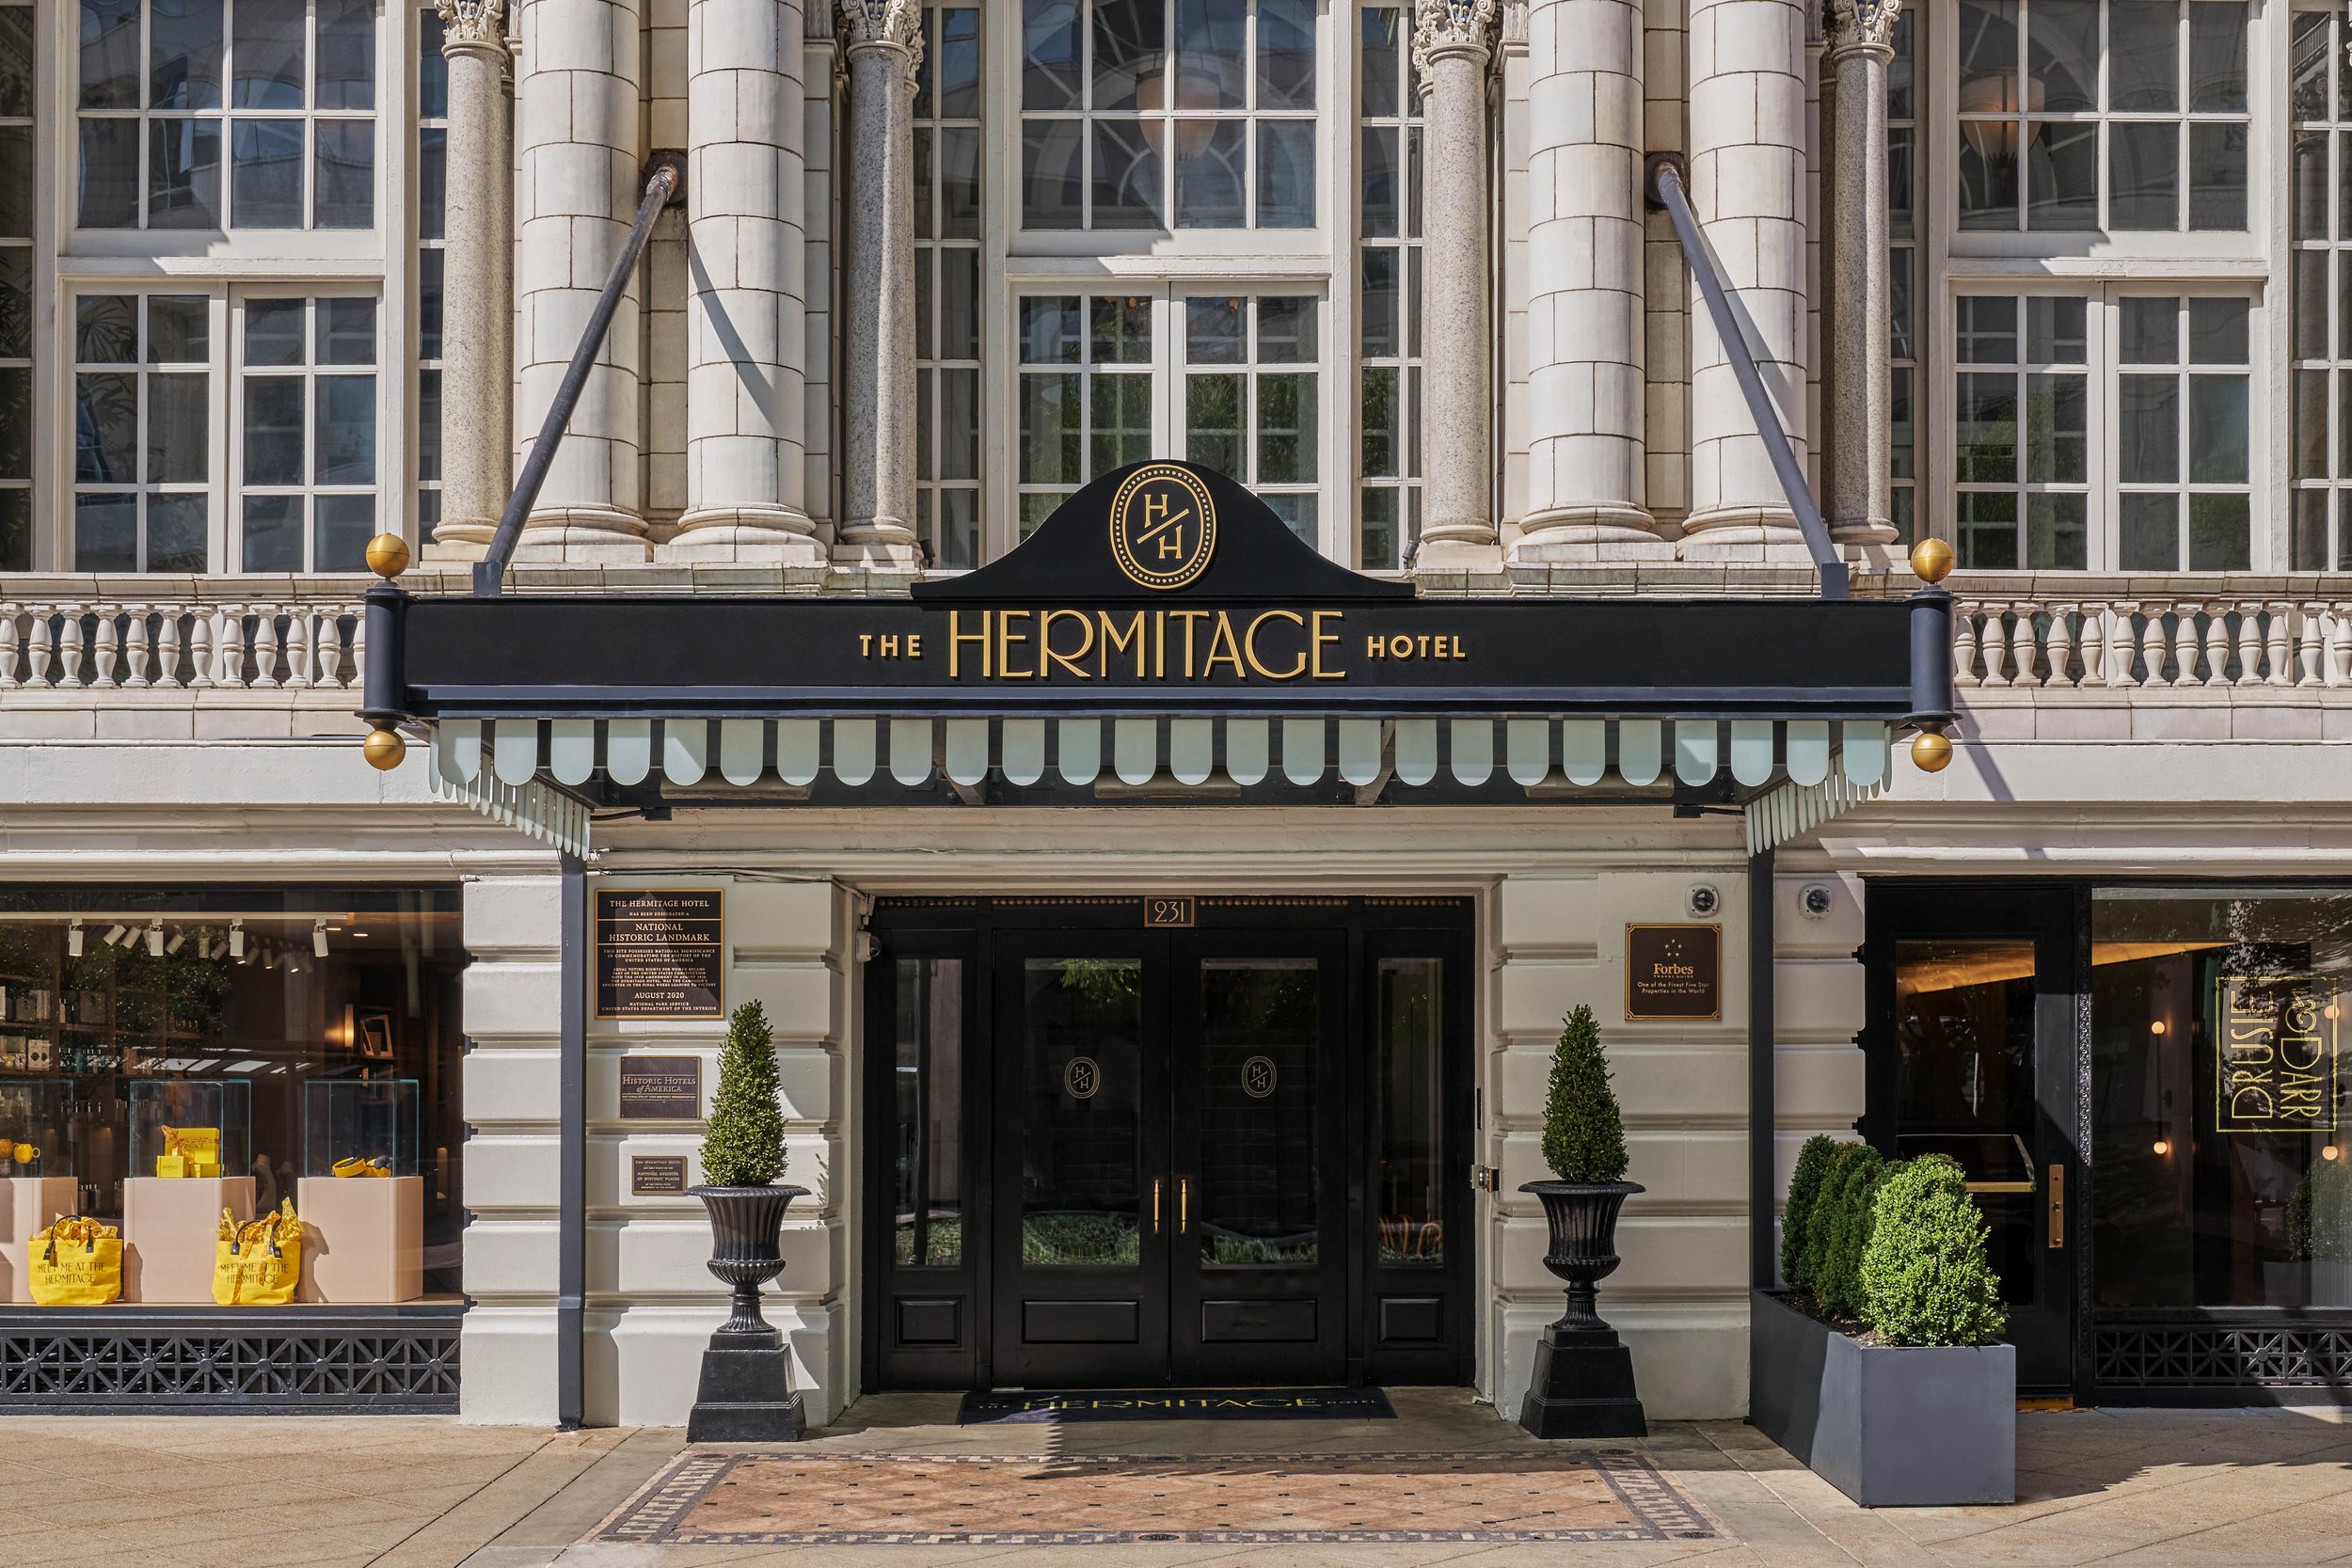 The Hermitage Hotel Facade